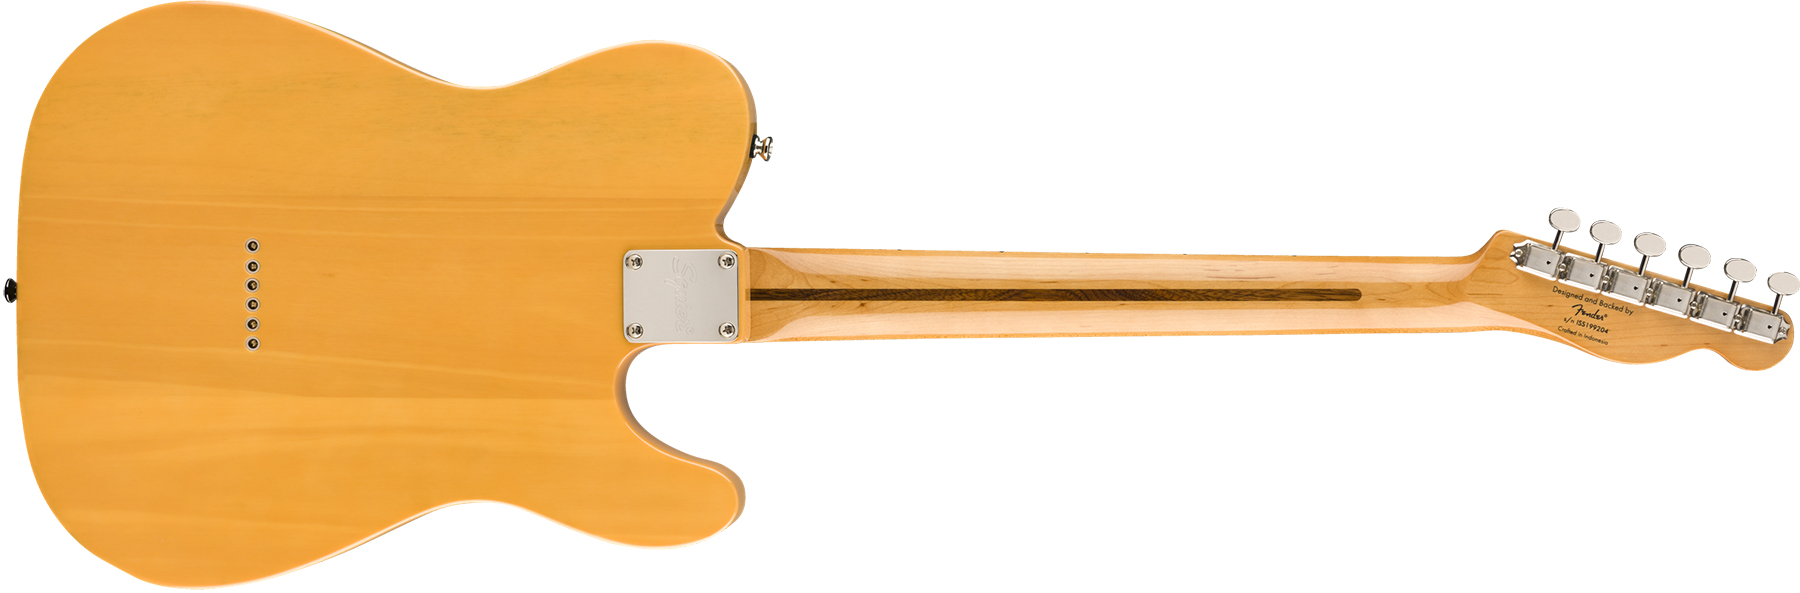 Squier Tele '50s Lh Gaucher Classic Vibe 2019 Mn 2019 - Butterscotch Blonde - Linkshandige elektrische gitaar - Variation 1